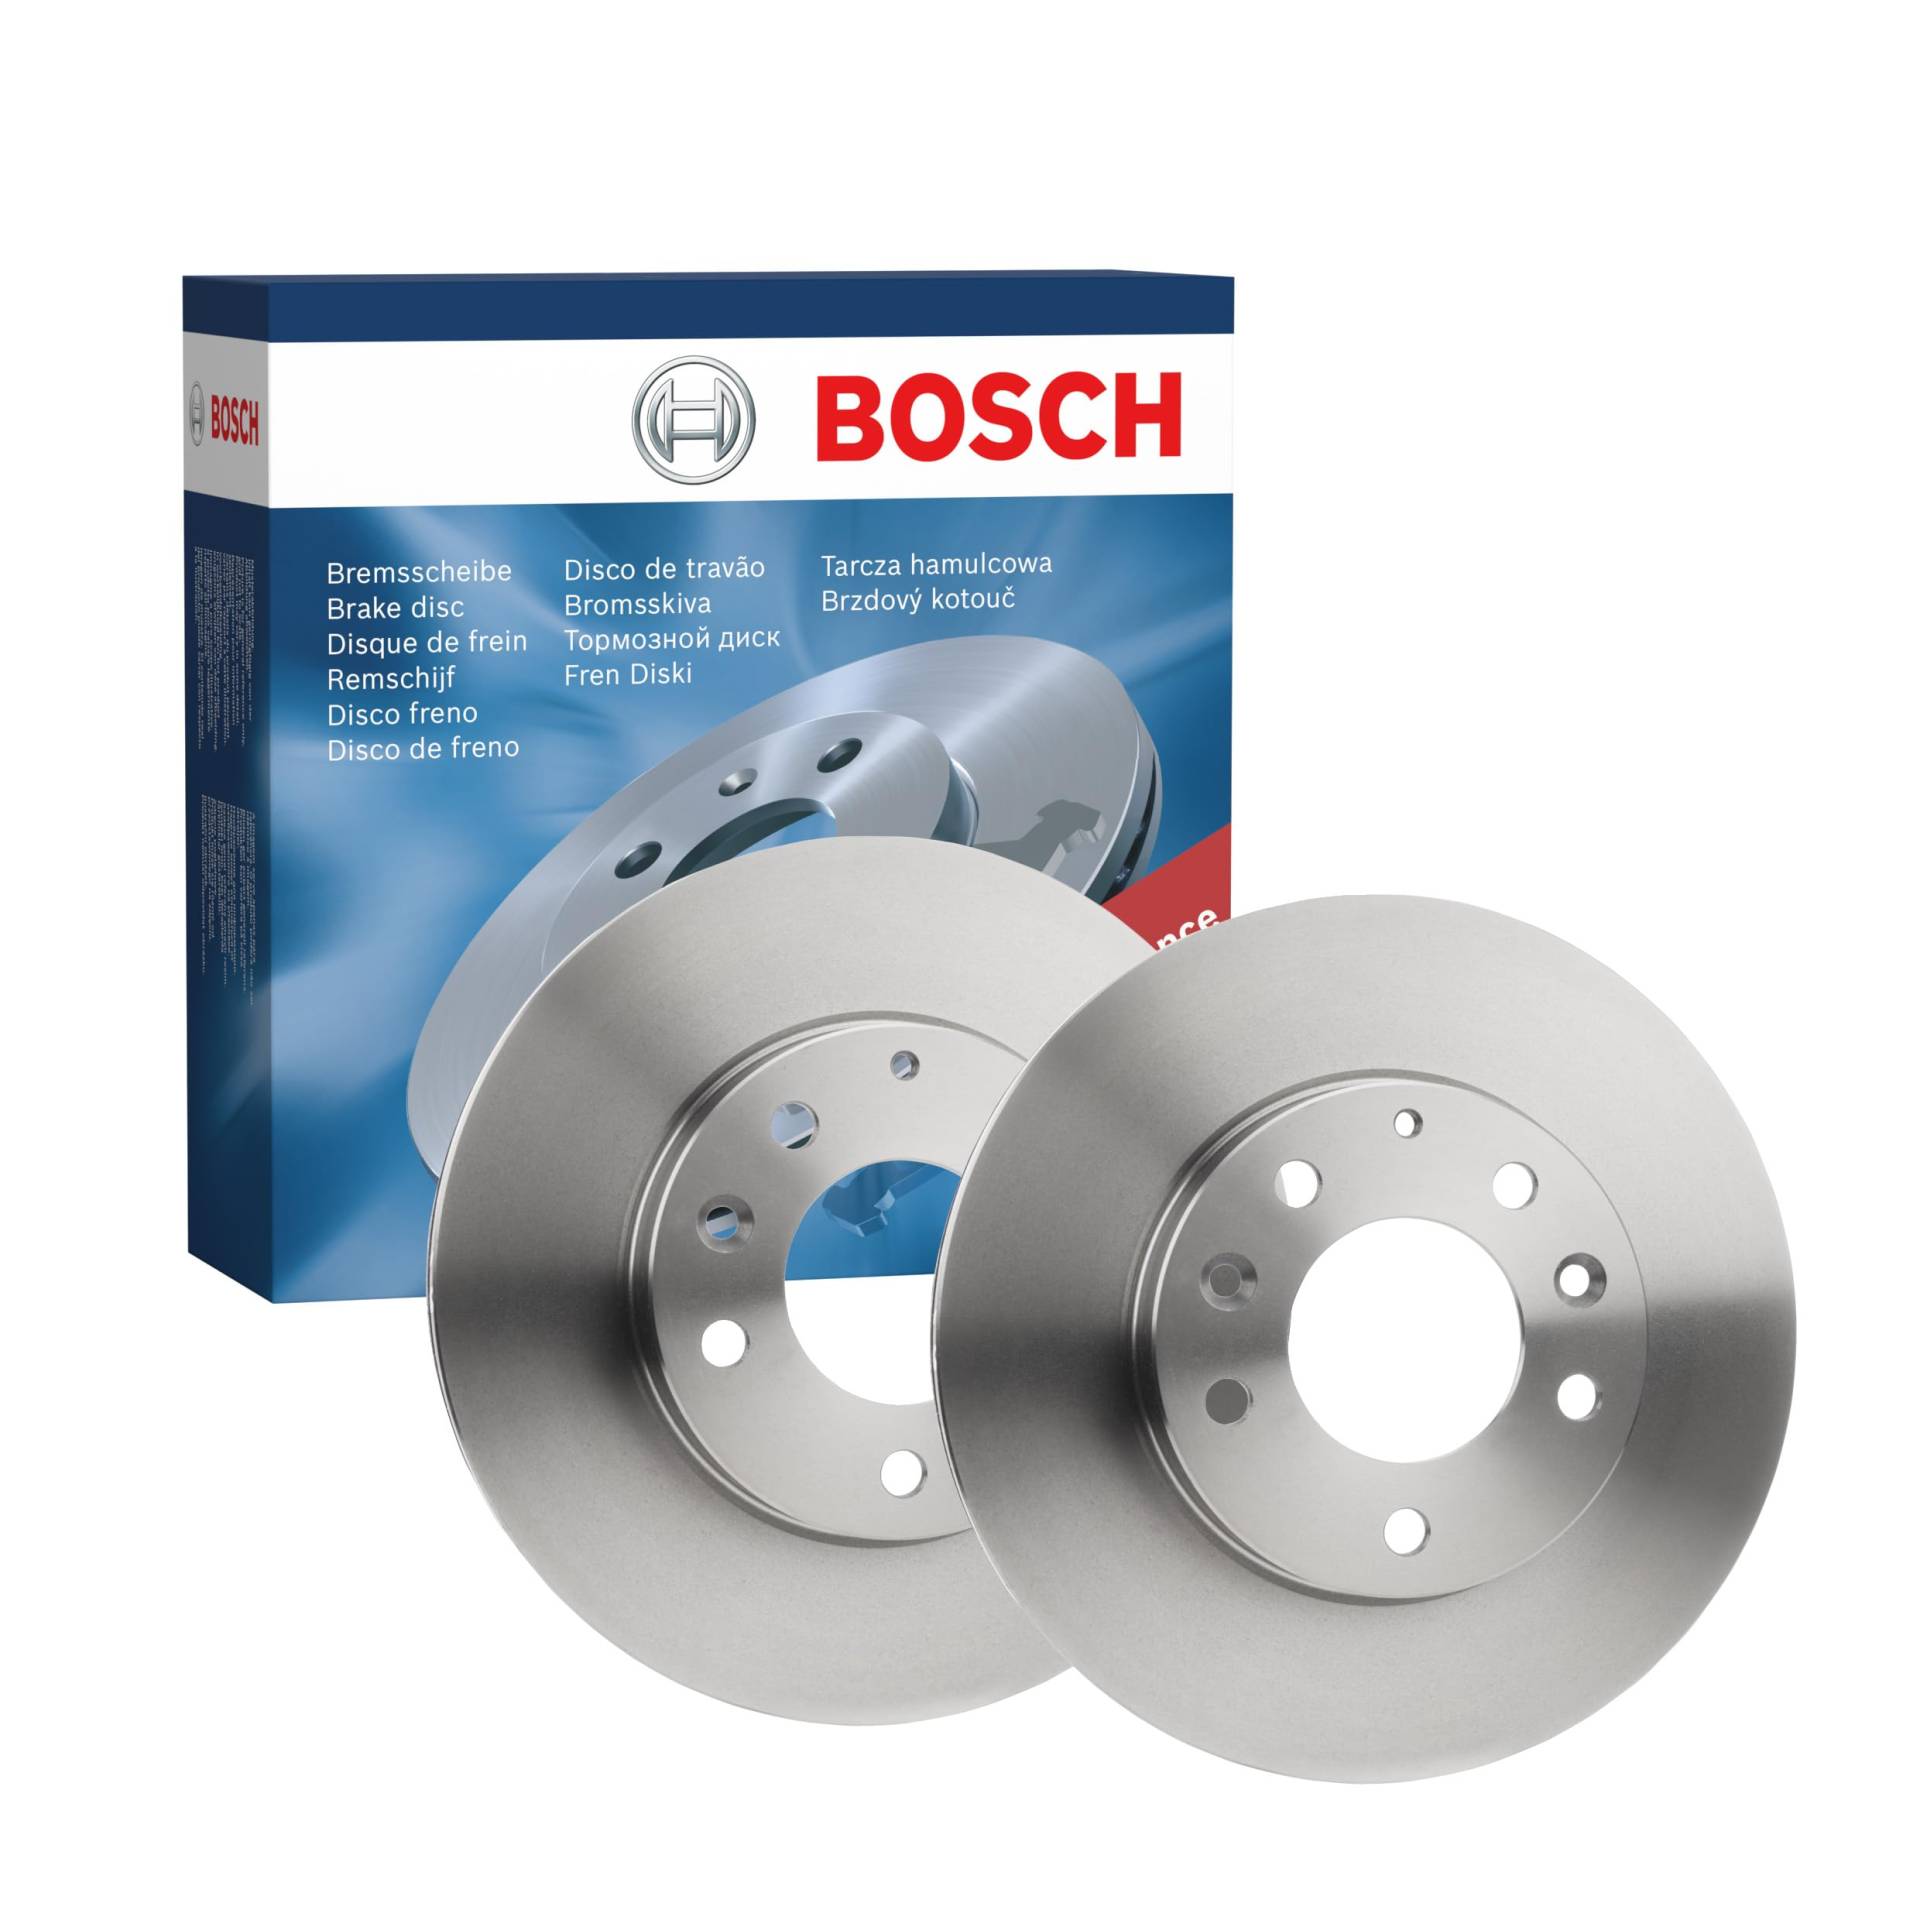 Bosch BD921 Bremsscheiben - Vorderachse - ECE-R90 Zertifizierung - zwei Bremsscheiben pro Set von Bosch Automotive